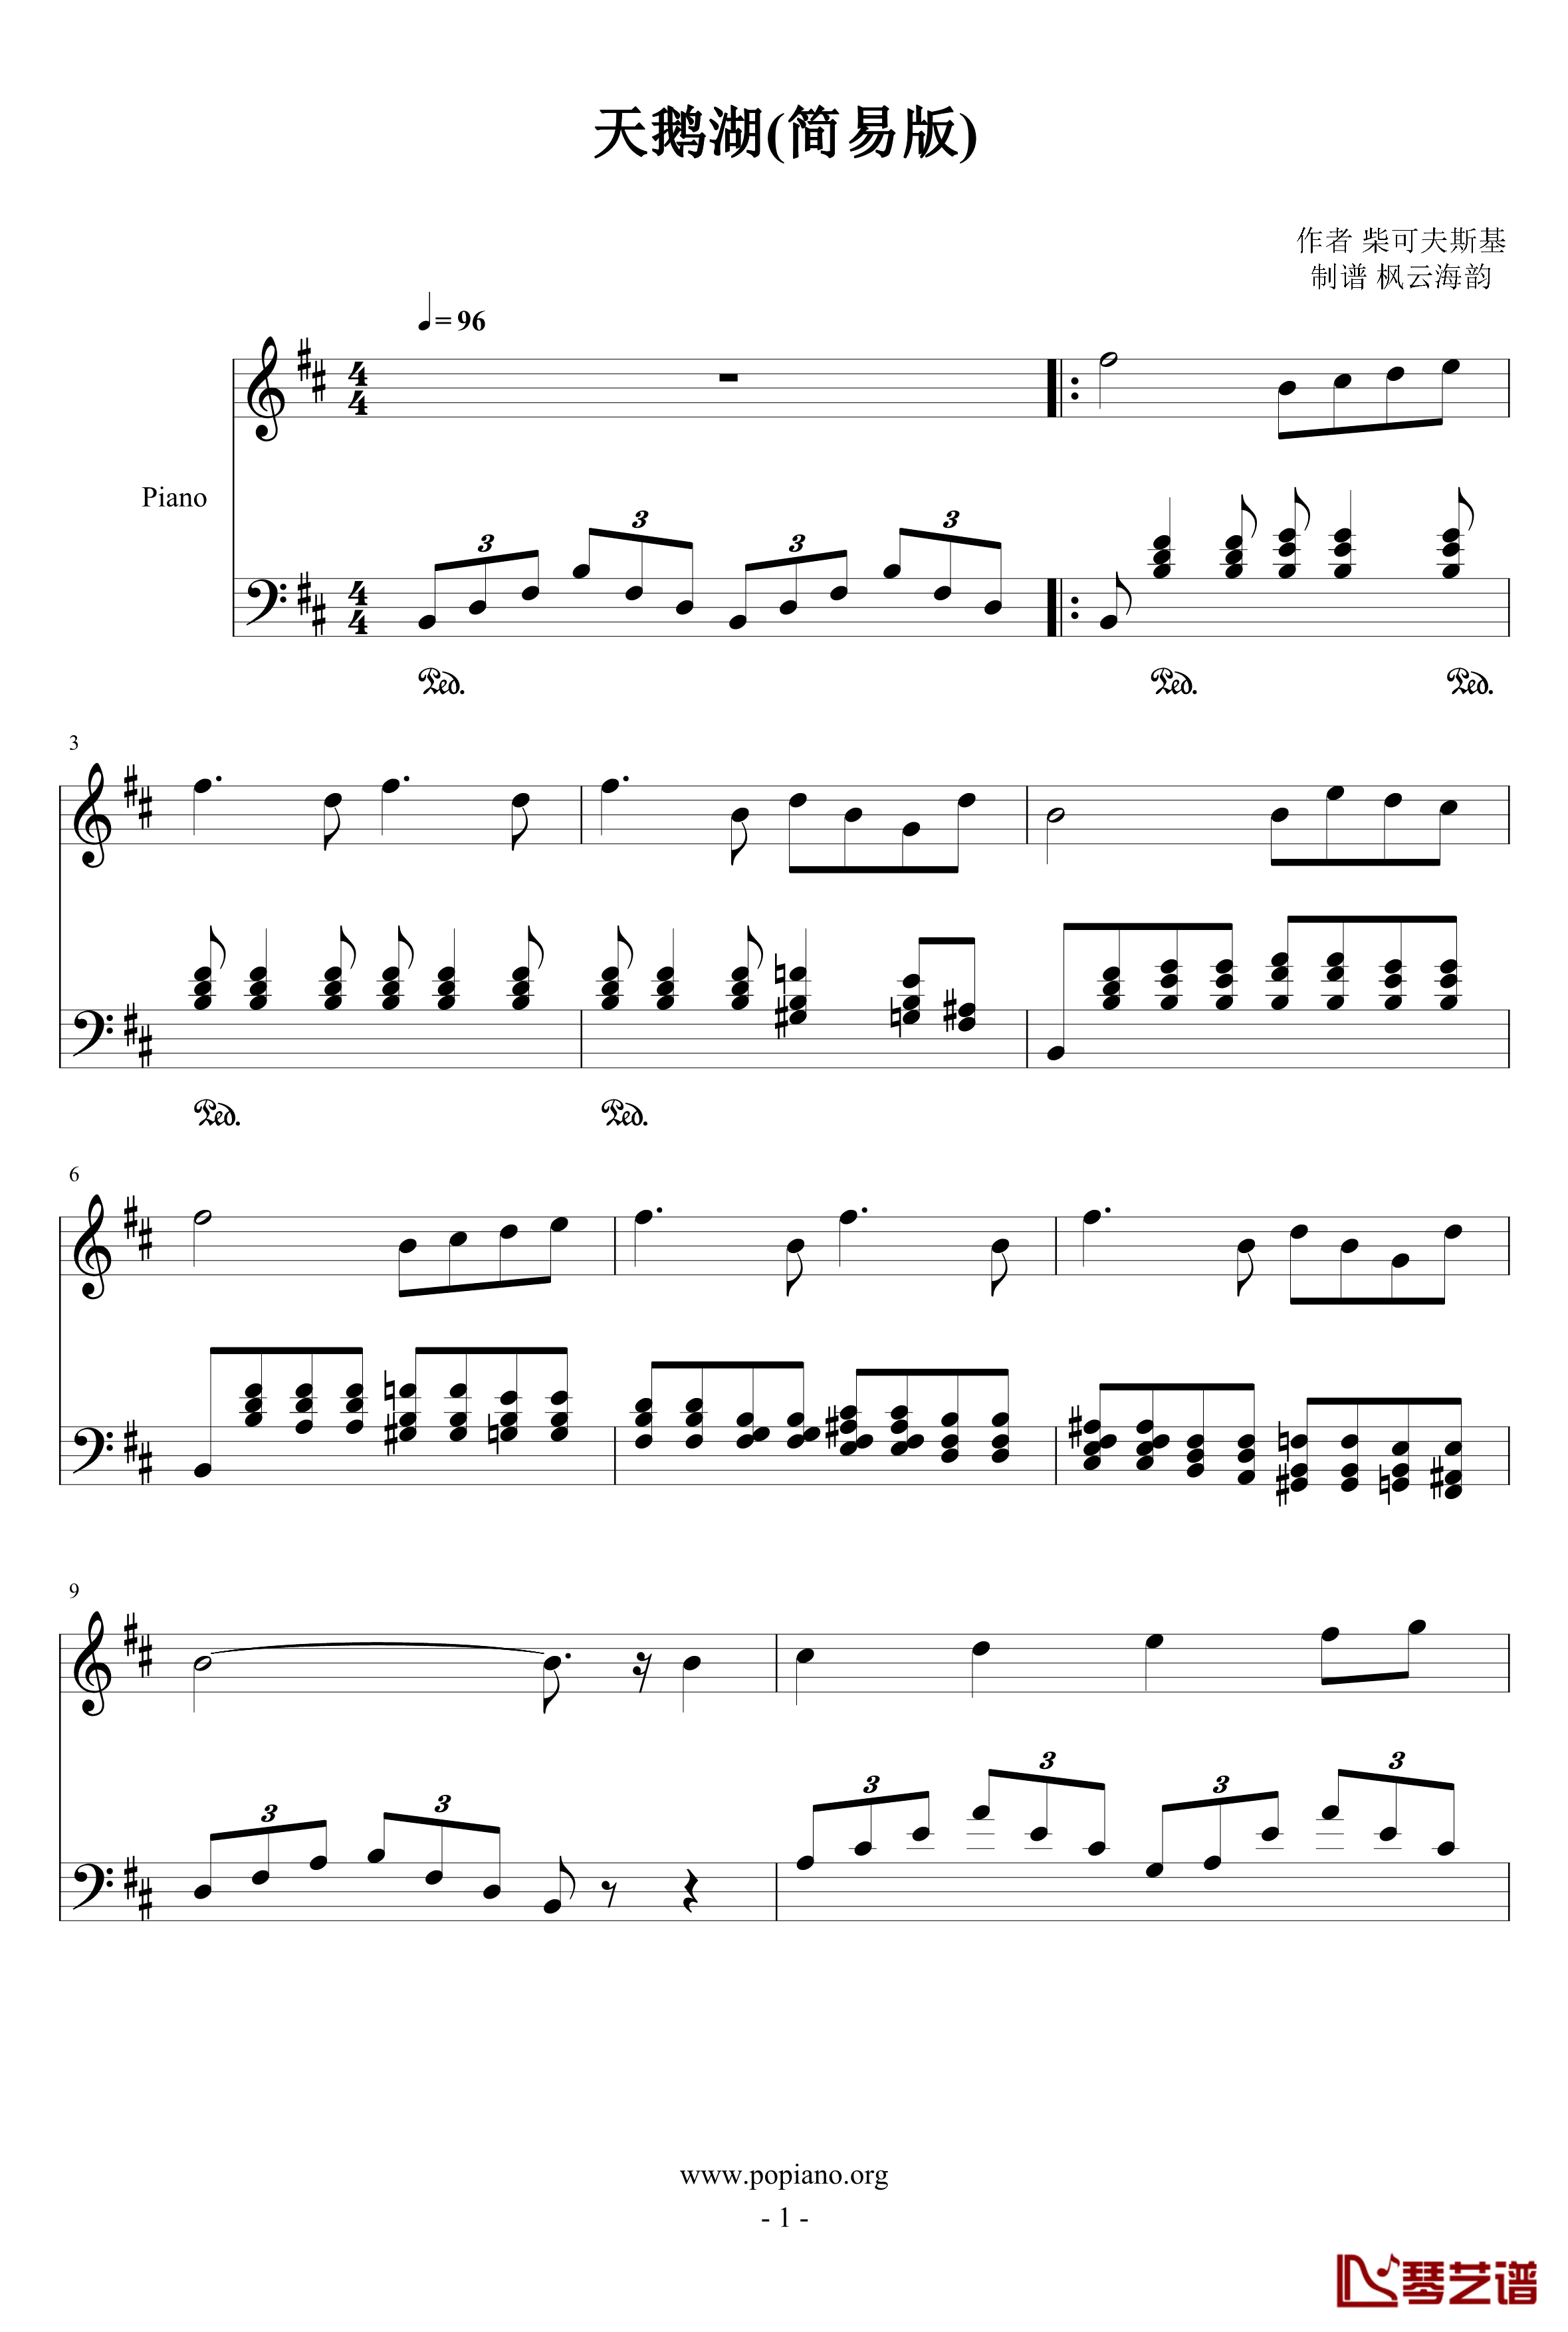 天鹅湖钢琴谱 简易版-柴科夫斯基-Peter Ilyich Tchaikovsky1